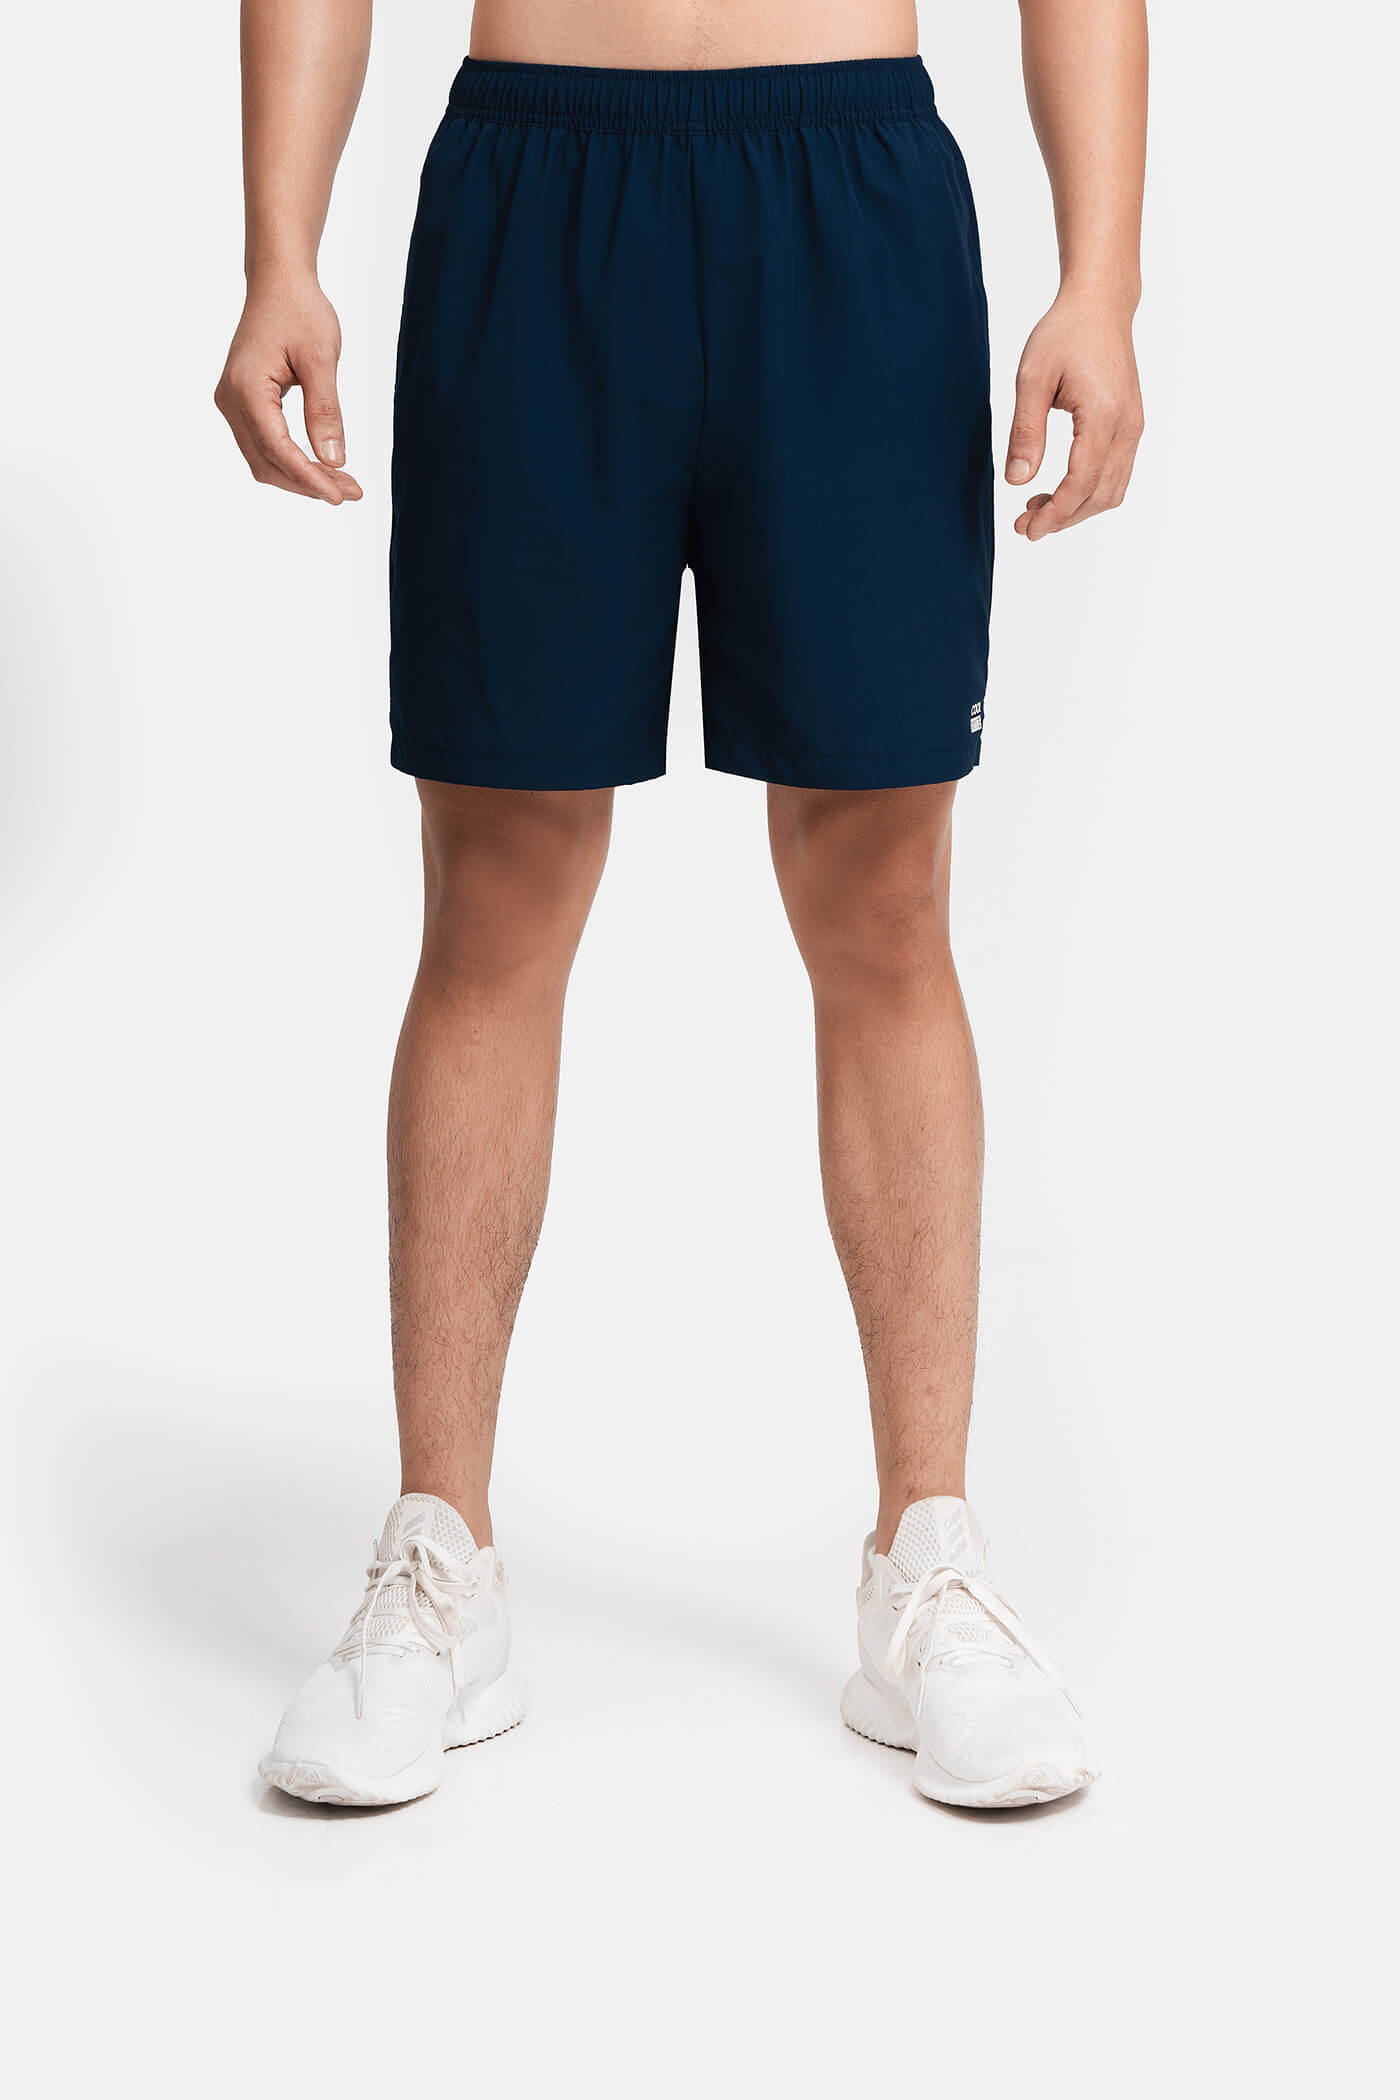 Săn deal - Quần shorts nam thể thao Recycle 7" V2 (túi sau có khóa kéo) Xanh navy